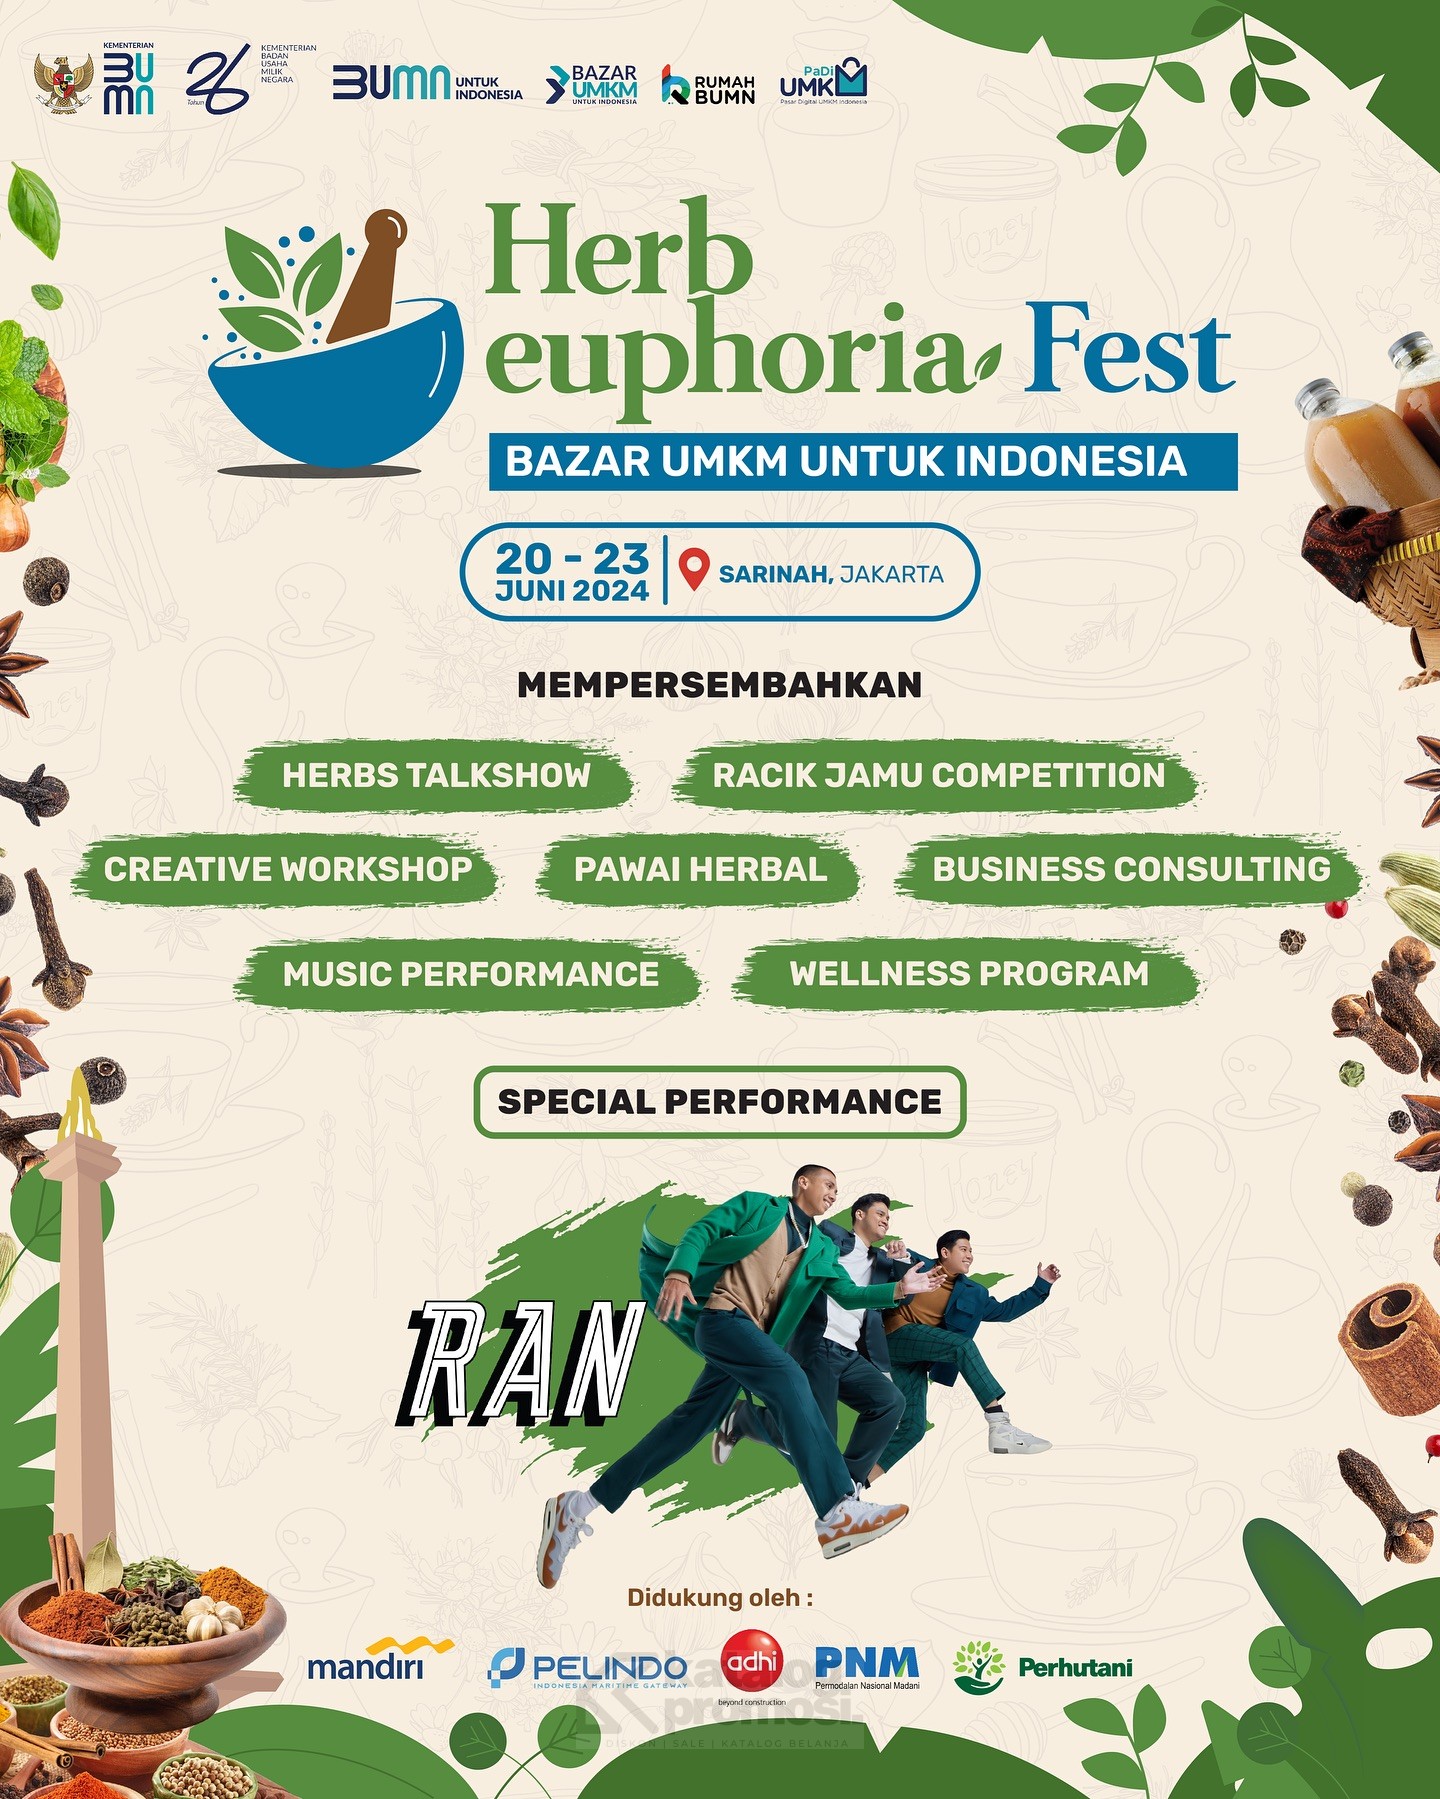 Herb Euphoria Fest Bazaar UMKM di Sarinah Jakarta MULAI TANGGAL 20-23 Juni 2024